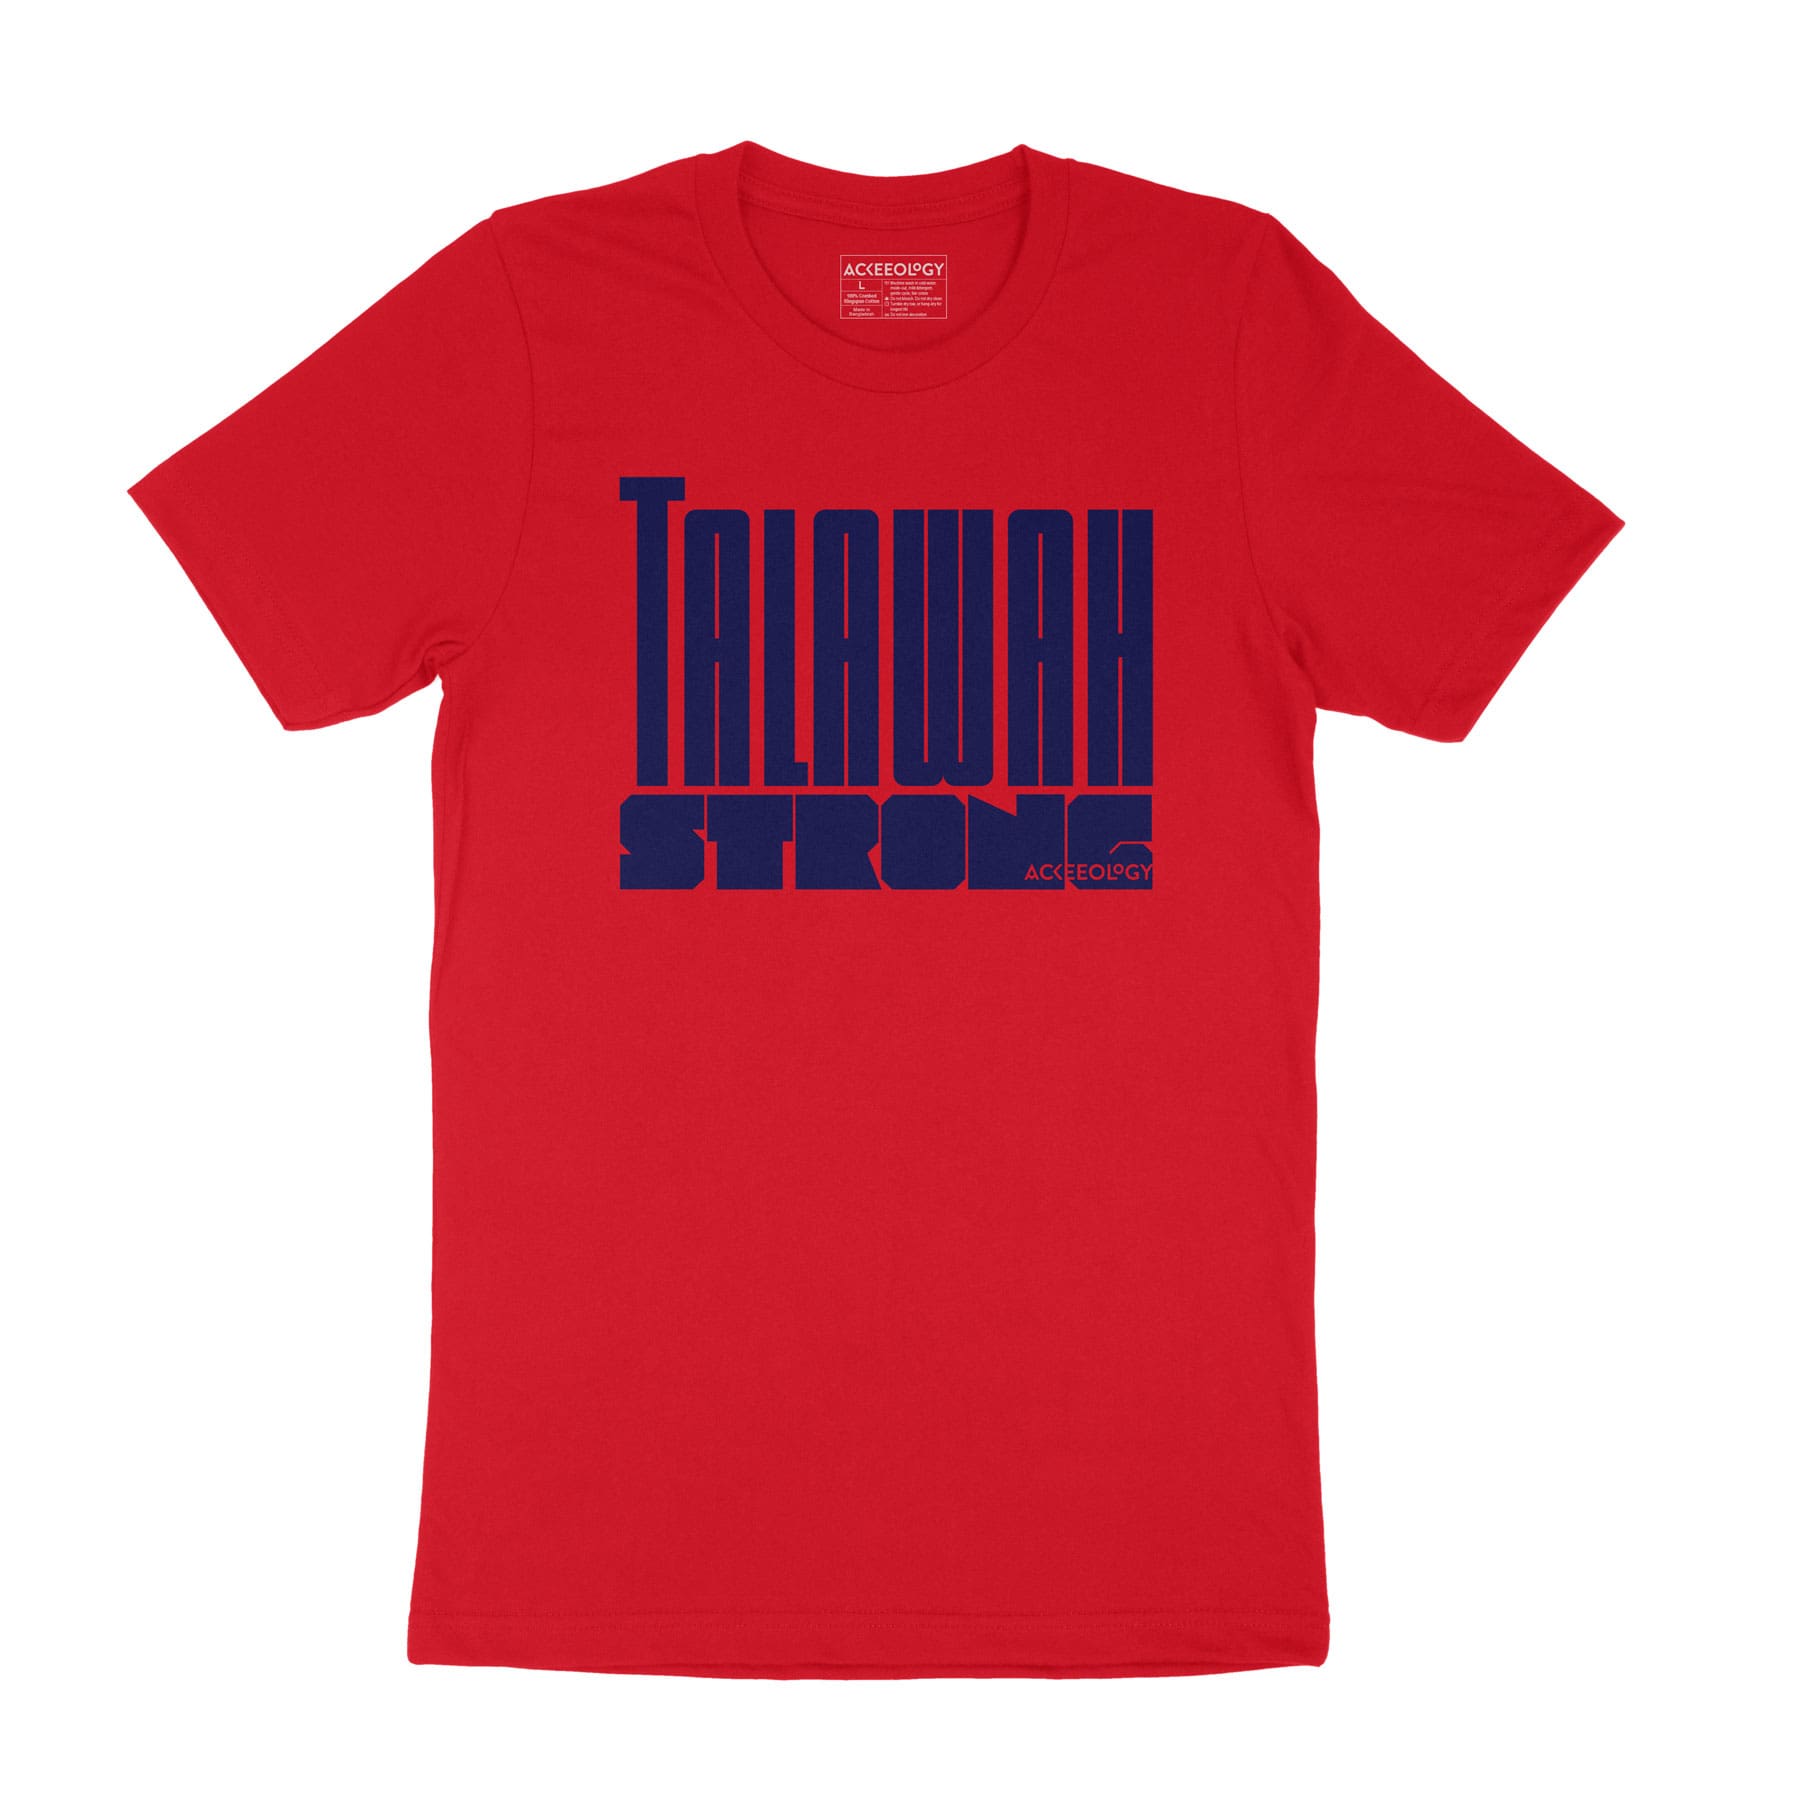 Talawah Strong t-shirt - red